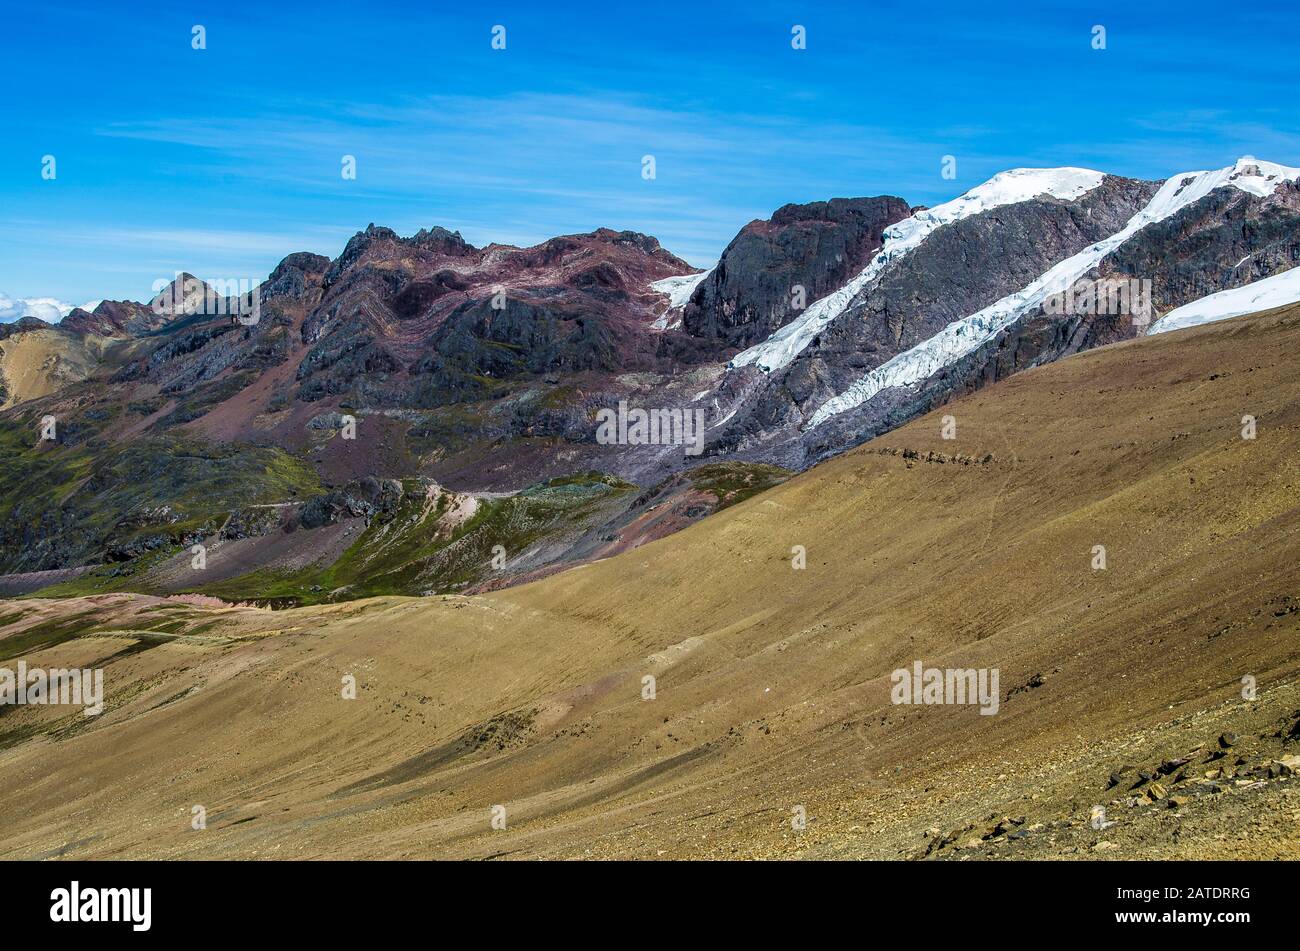 Vinicunca, Pérou - Rainbow Mountain (5200 m) dans les Andes, Cordillera de los Andes, région de Cusco en Amérique du Sud. Montagnes Pérou paysage Banque D'Images